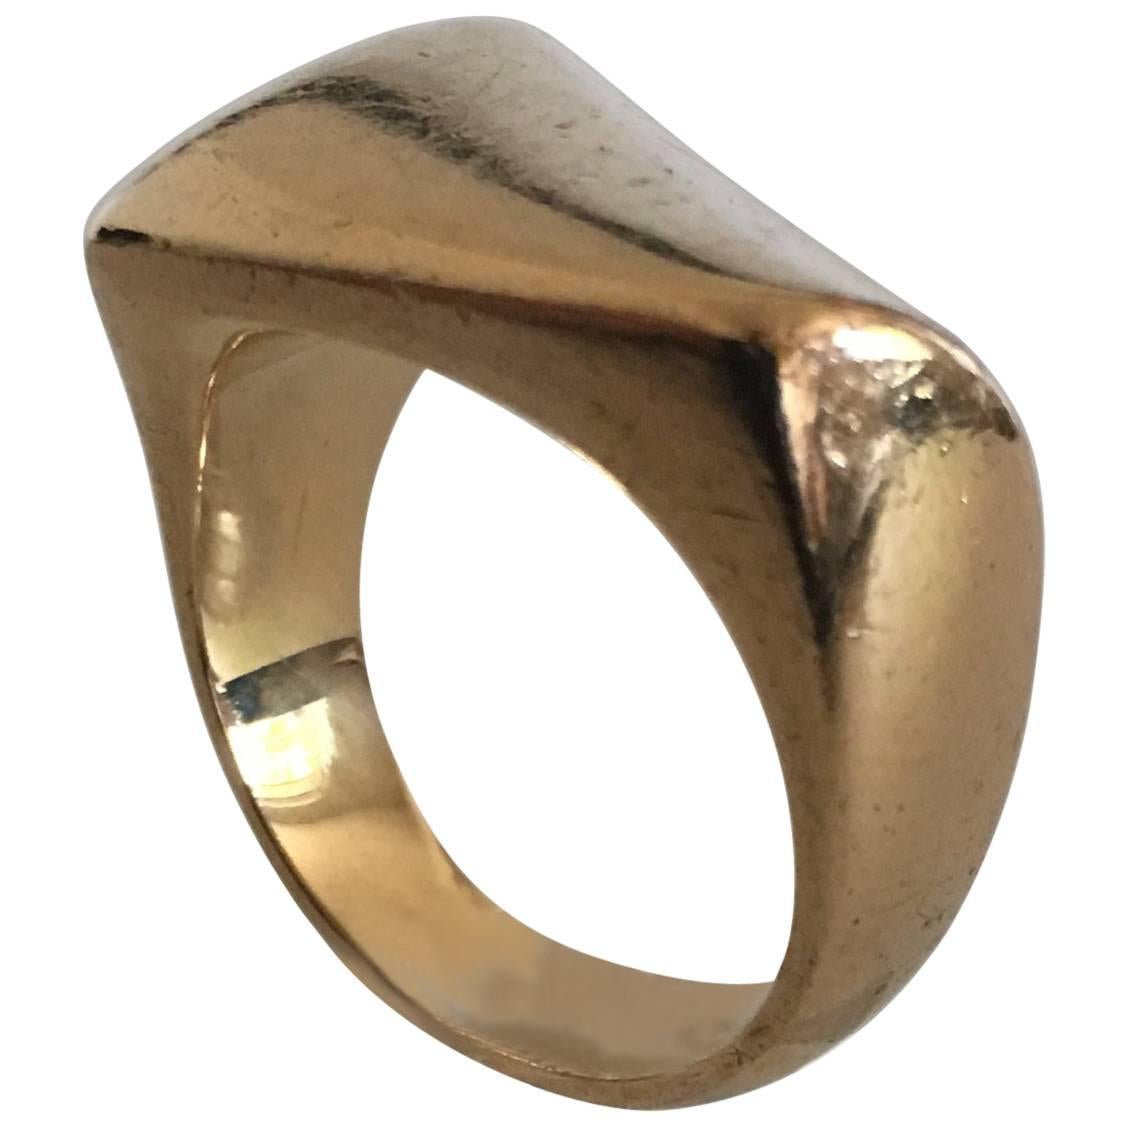 Georg Jensen 18 Karat Gold Ring No. 1141